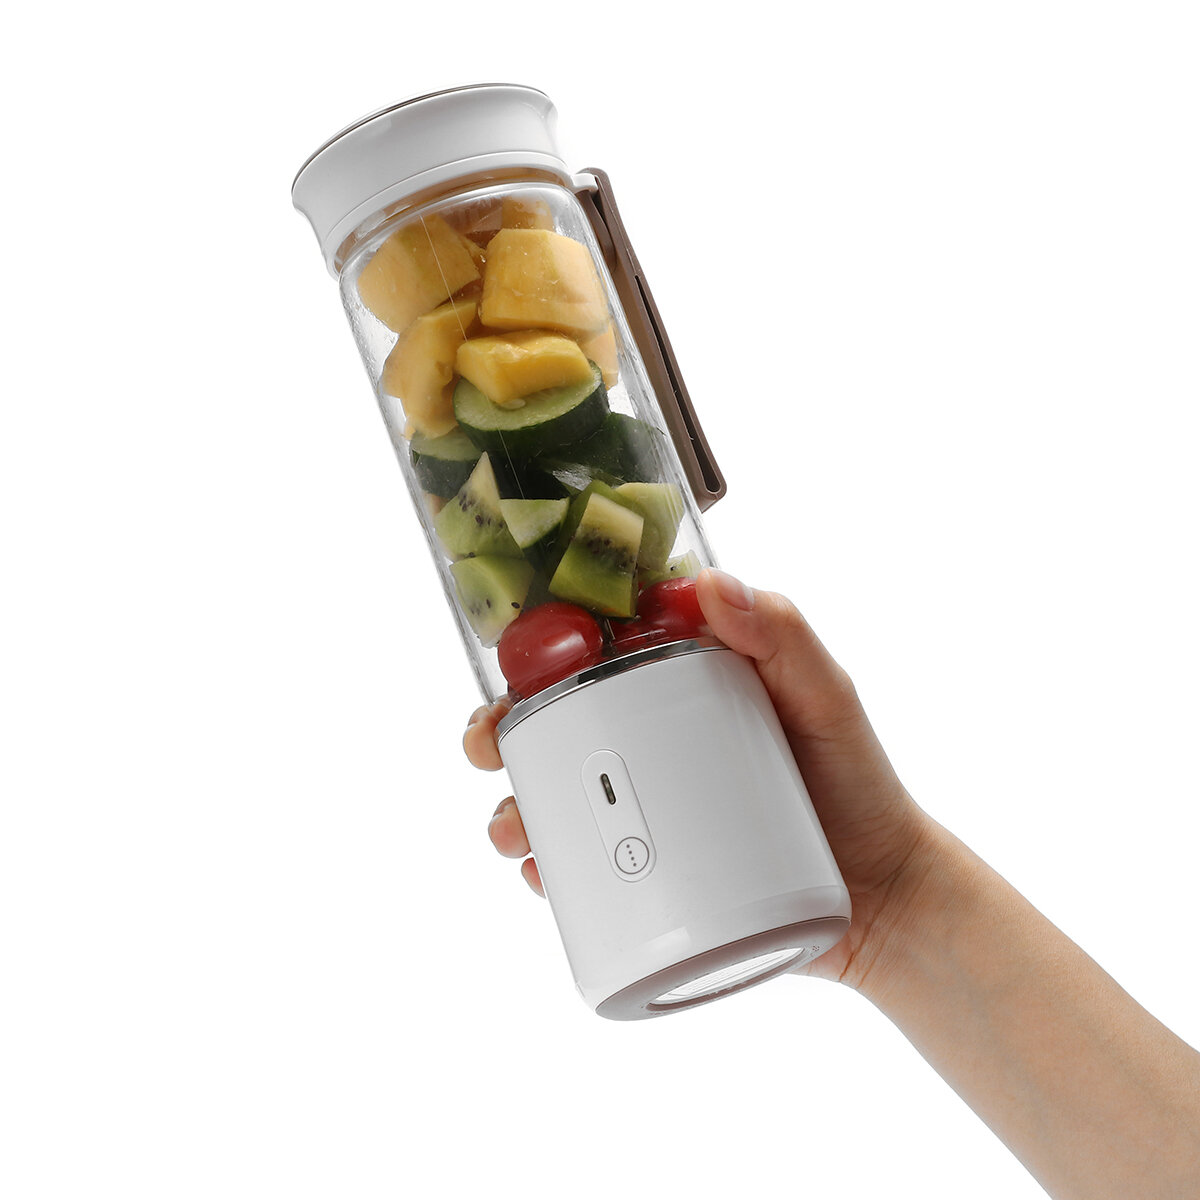 AUGIENB 500ML DIY Fruit Juicer Fles van Xaomi Youpin